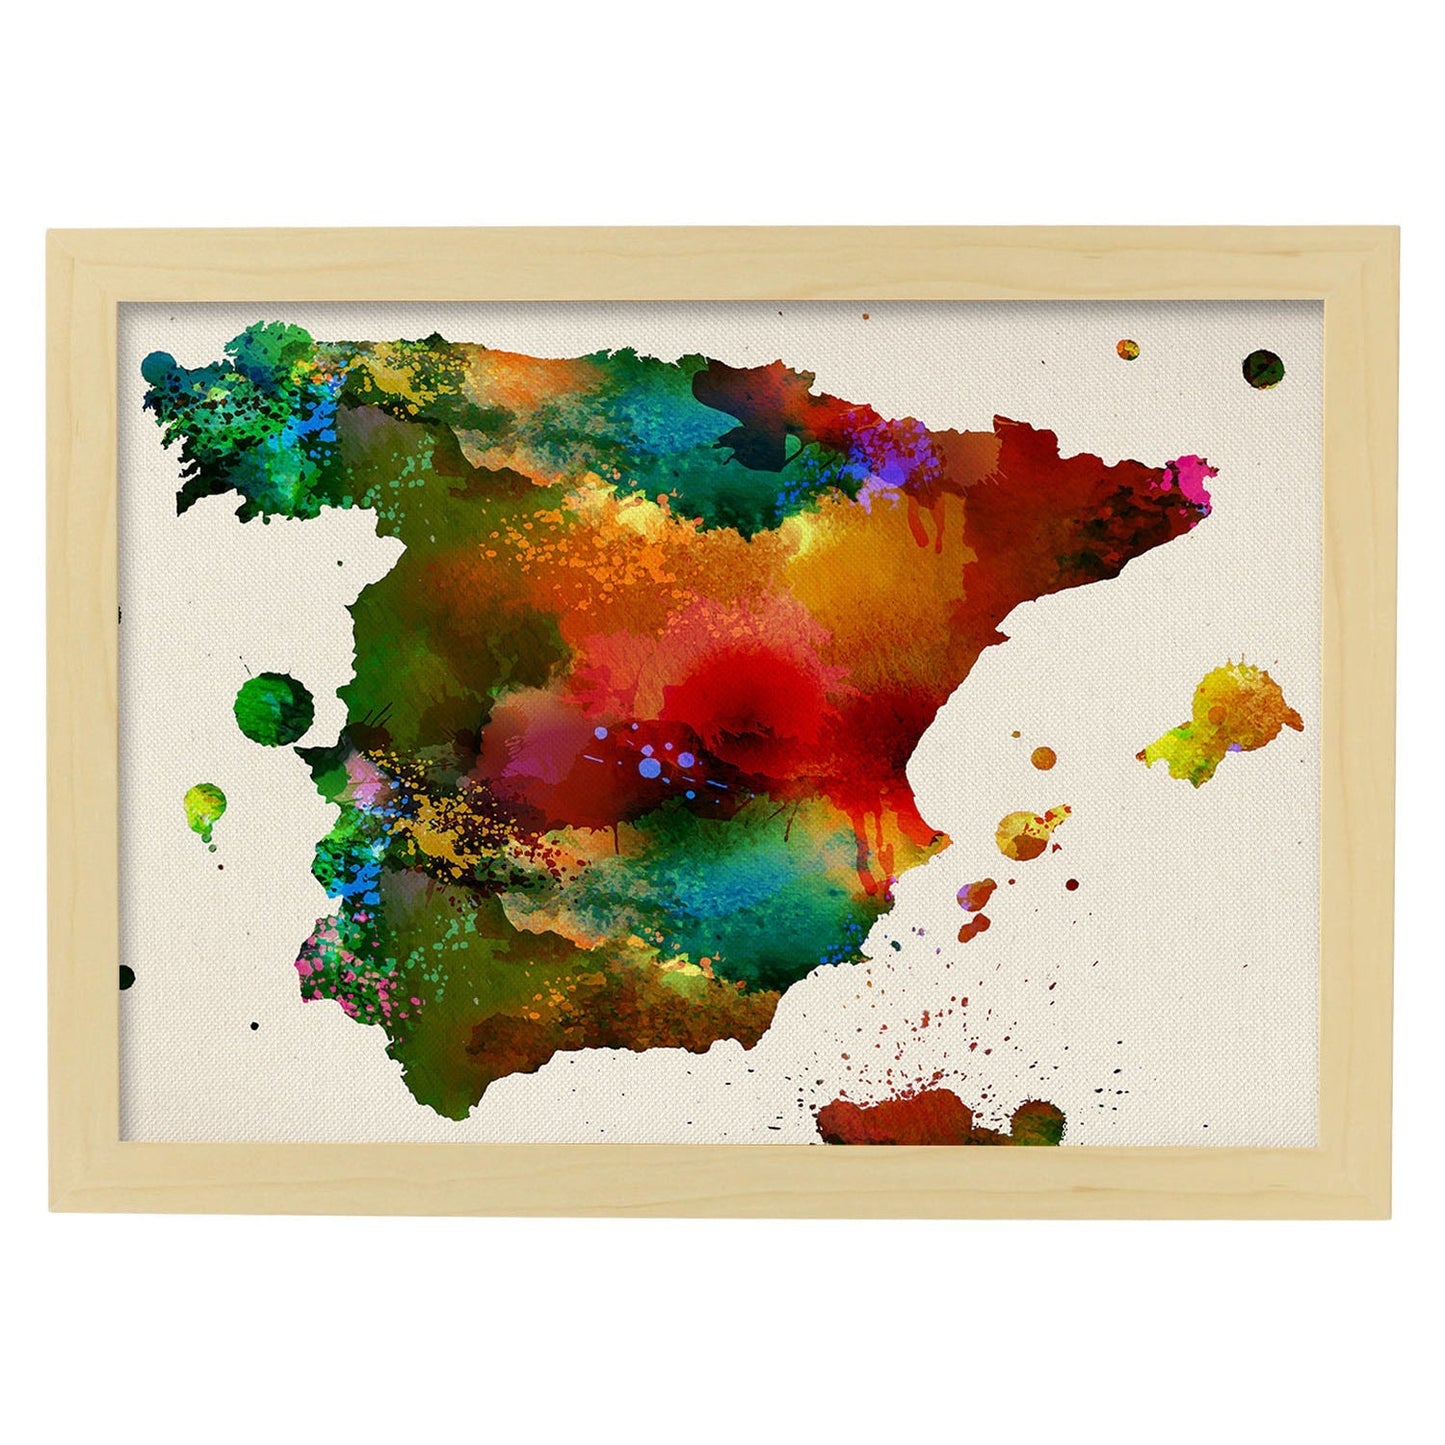 Poster de Mapa Espana 3. Láminas e ilustraciones de ciudades, comunidades, y mapas de España.-Artwork-Nacnic-A4-Marco Madera clara-Nacnic Estudio SL